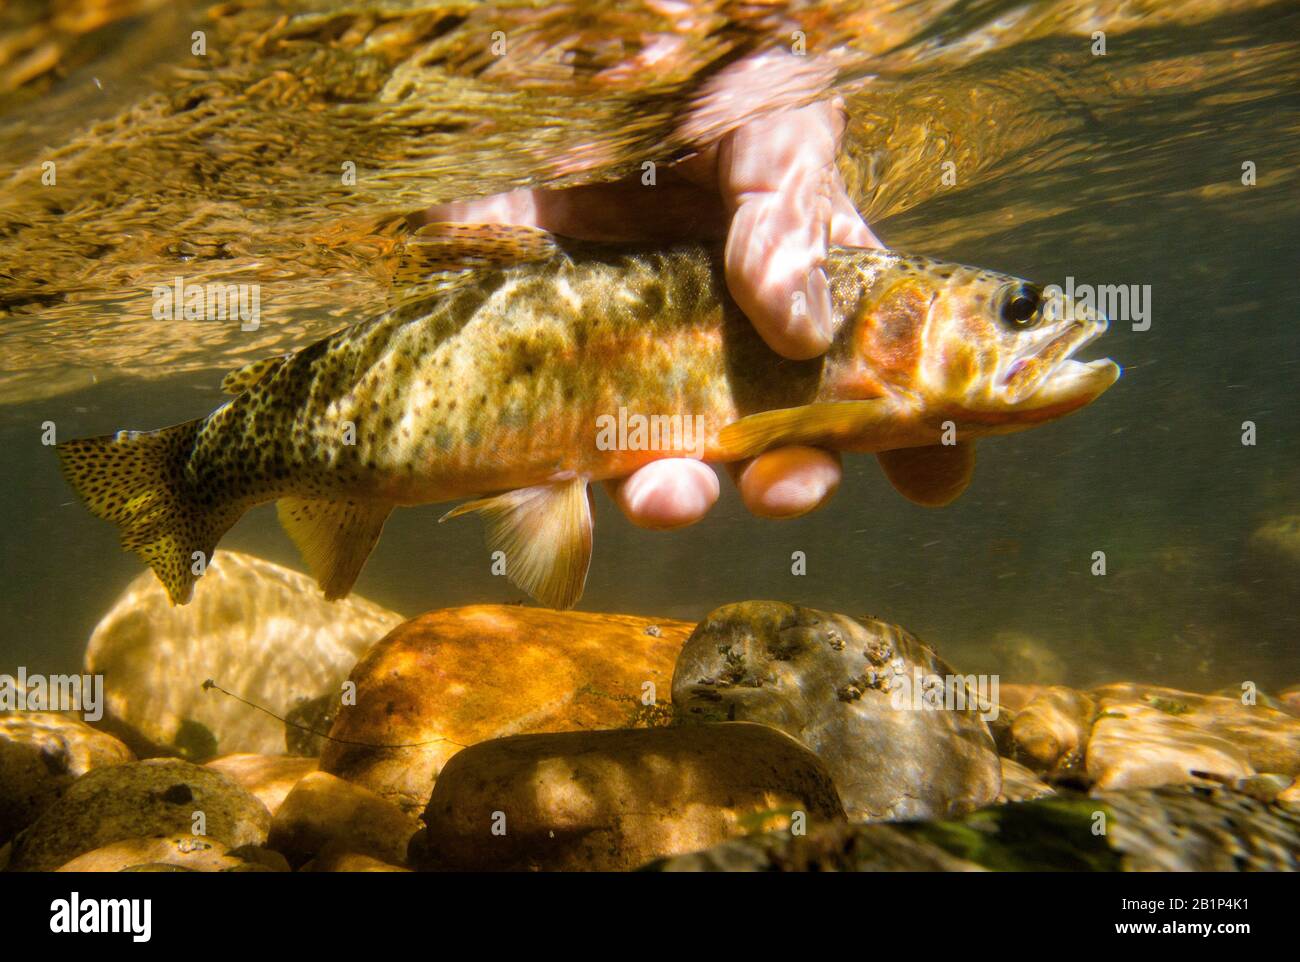 Eine westhangabwärts strebende Cutthroat-Forelle, die wieder in den Bach entlassen wird. Der Fisch wurde auf einer nassen Fliege, Granite County, Montana gefangen Stockfoto